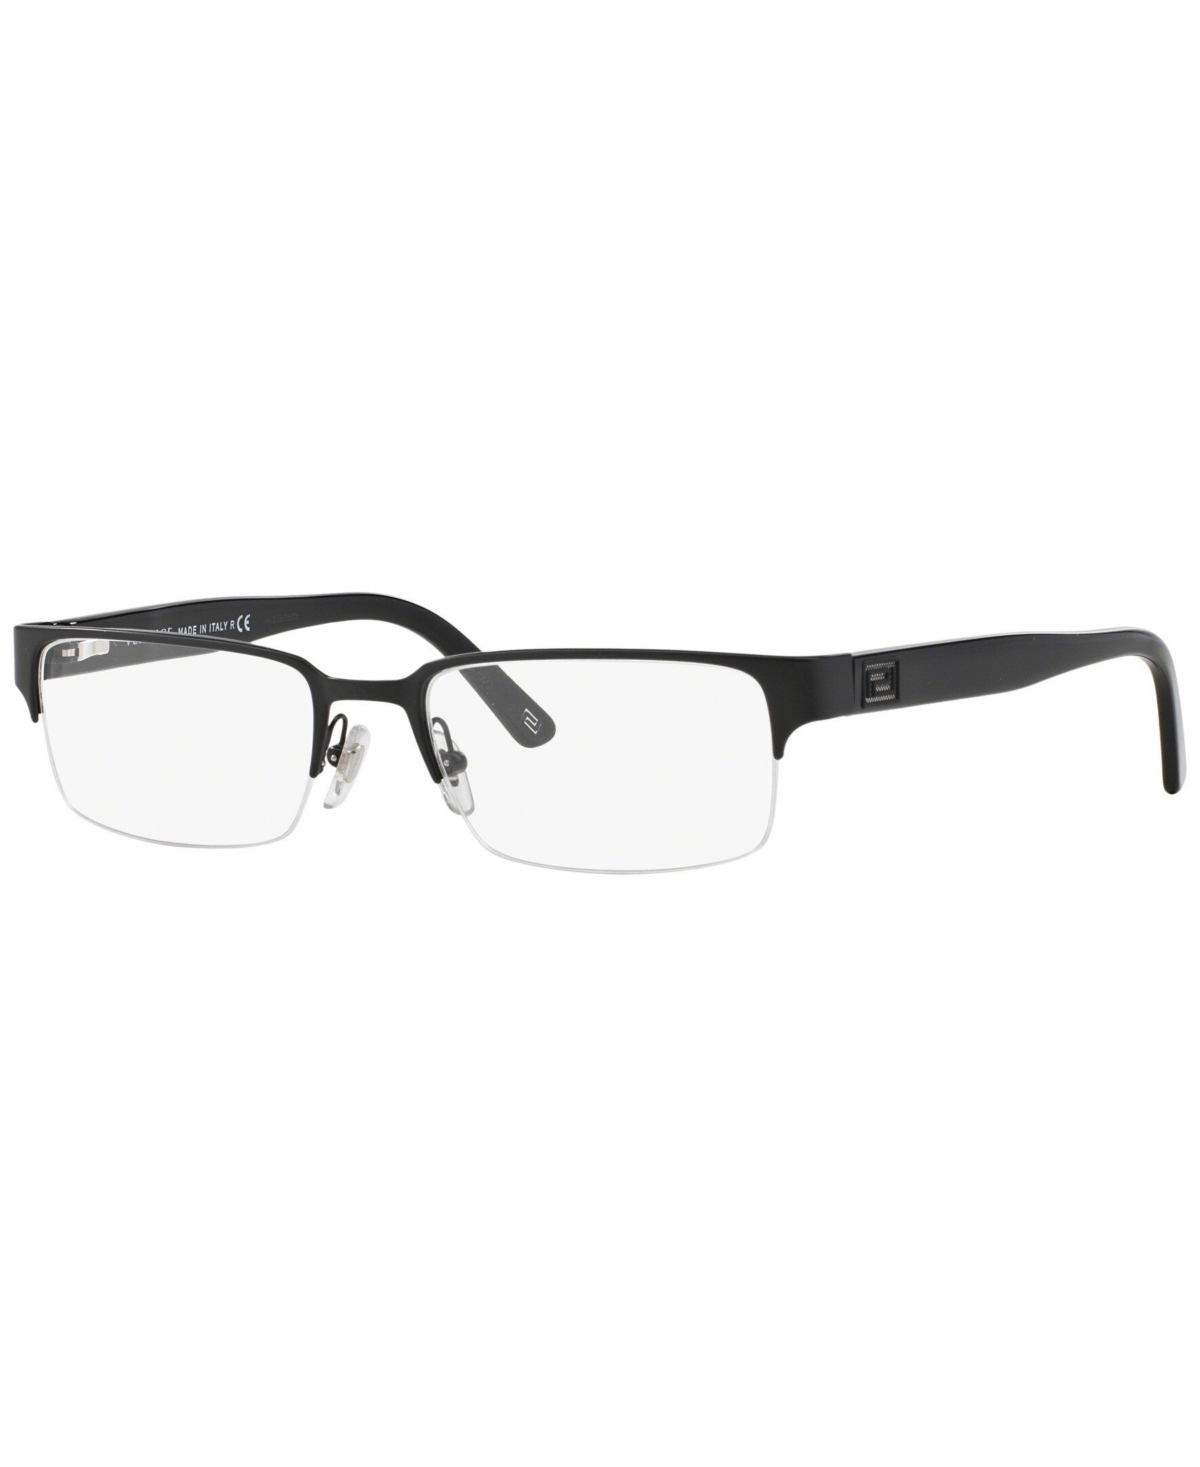 VE1184 Men's Rectangle Eyeglasses - Brown